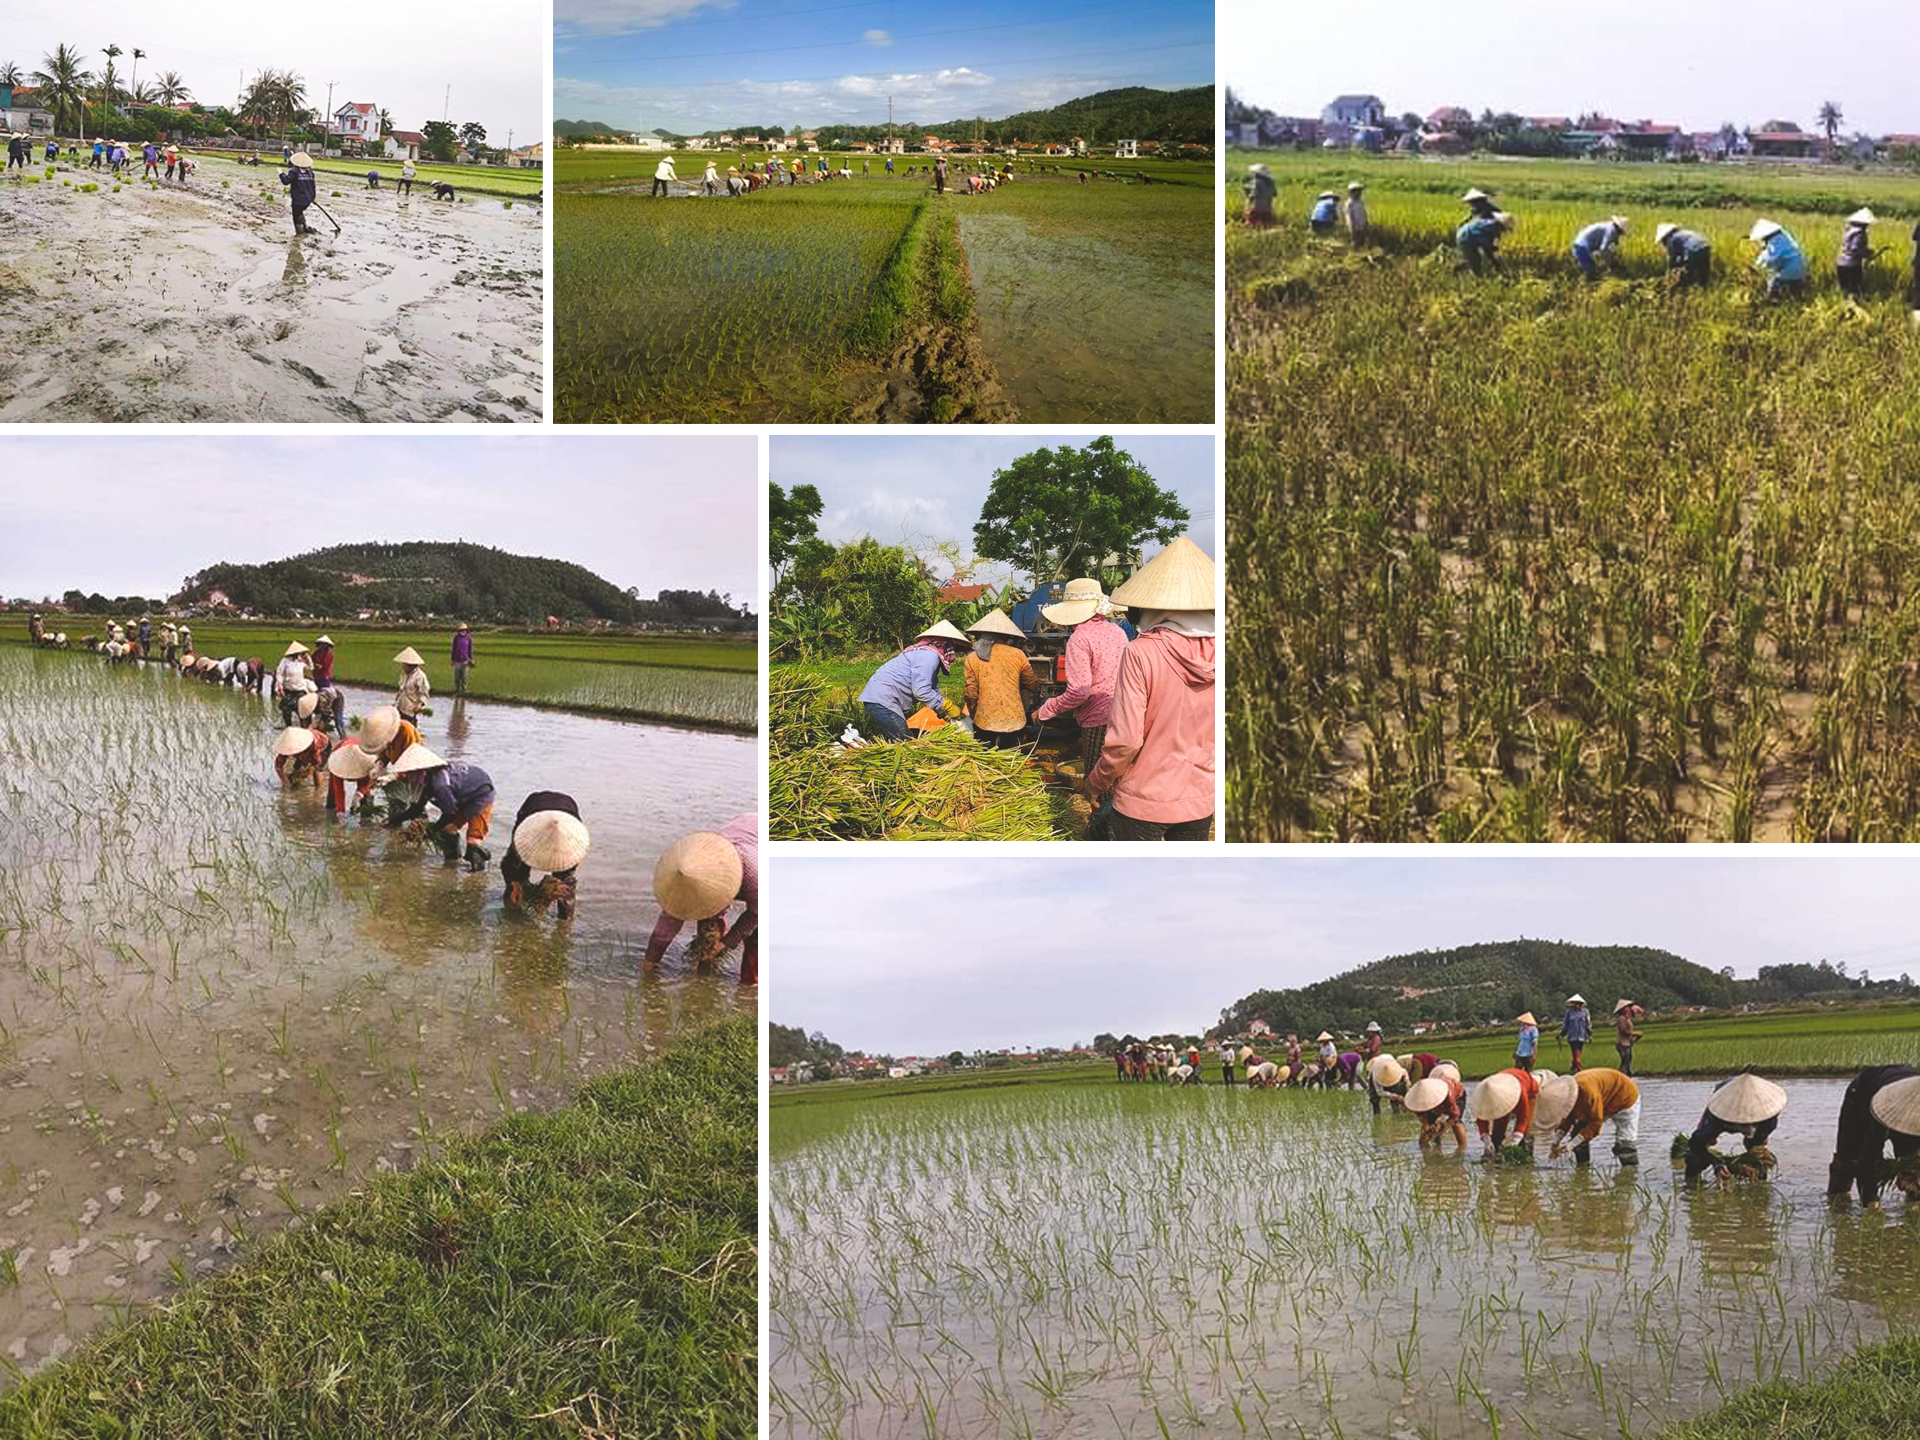 Phong trào trồng lúa gây quỹ được các chi hội phụ nữ ở Quỳnh Lưu duy trì nhiều năm nay.